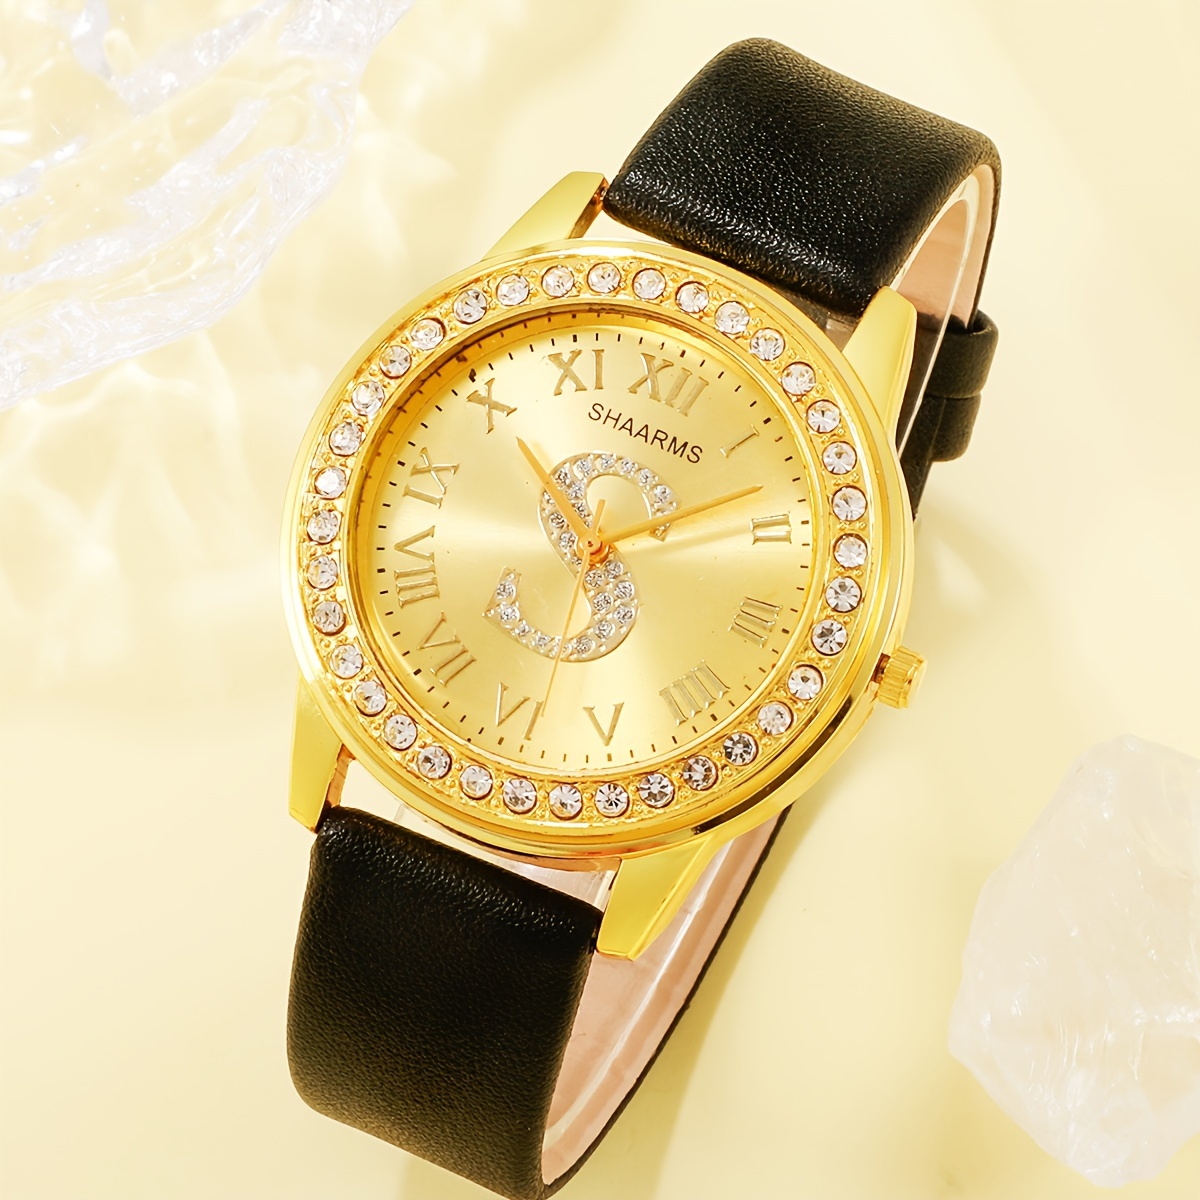 腕時計 レディース セット レディース腕時計 ラインストーン付き ファッションクオーツ腕時計、ジュエリーセット (ネックレス、リン